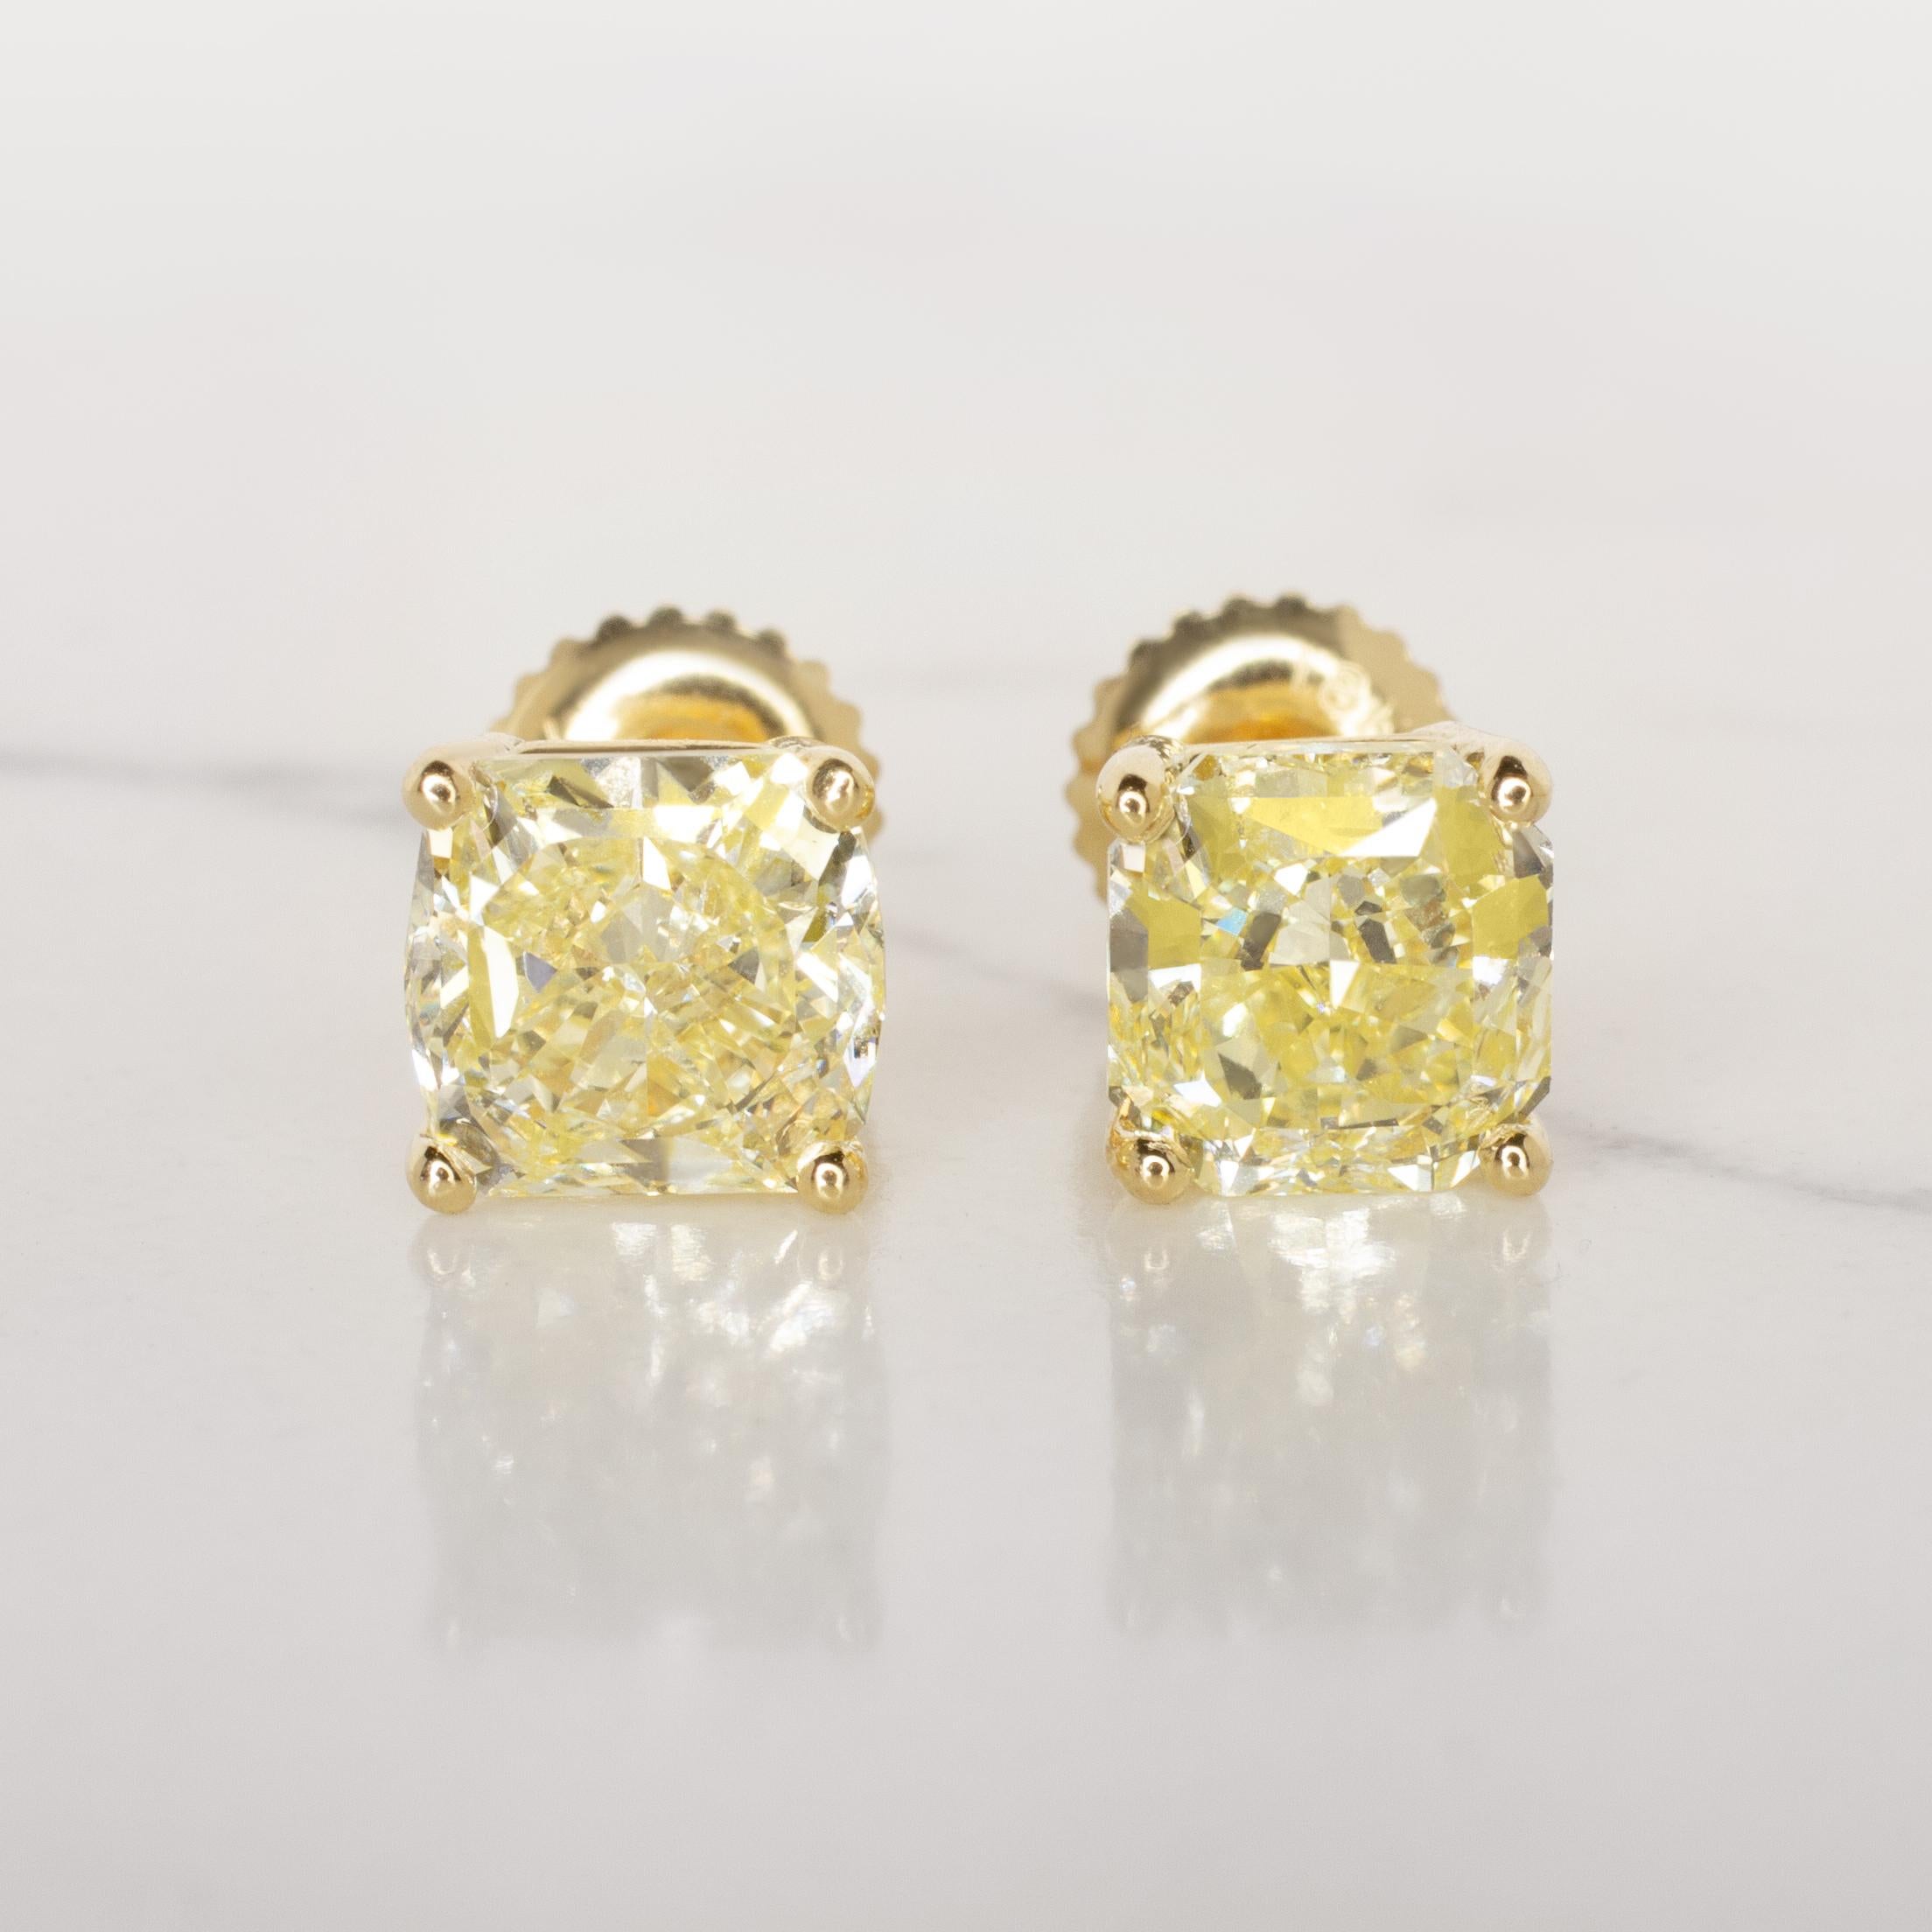 Erhöhen Sie Ihre Eleganz mit diesem außergewöhnlichen Paar GIA-zertifizierter hellgelber Diamanten im Kissenschliff mit jeweils 6 Karat. Der bezaubernde Farbton dieser Diamanten verleiht jedem Anlass einen Hauch von Wärme und Raffinesse.

Jeder